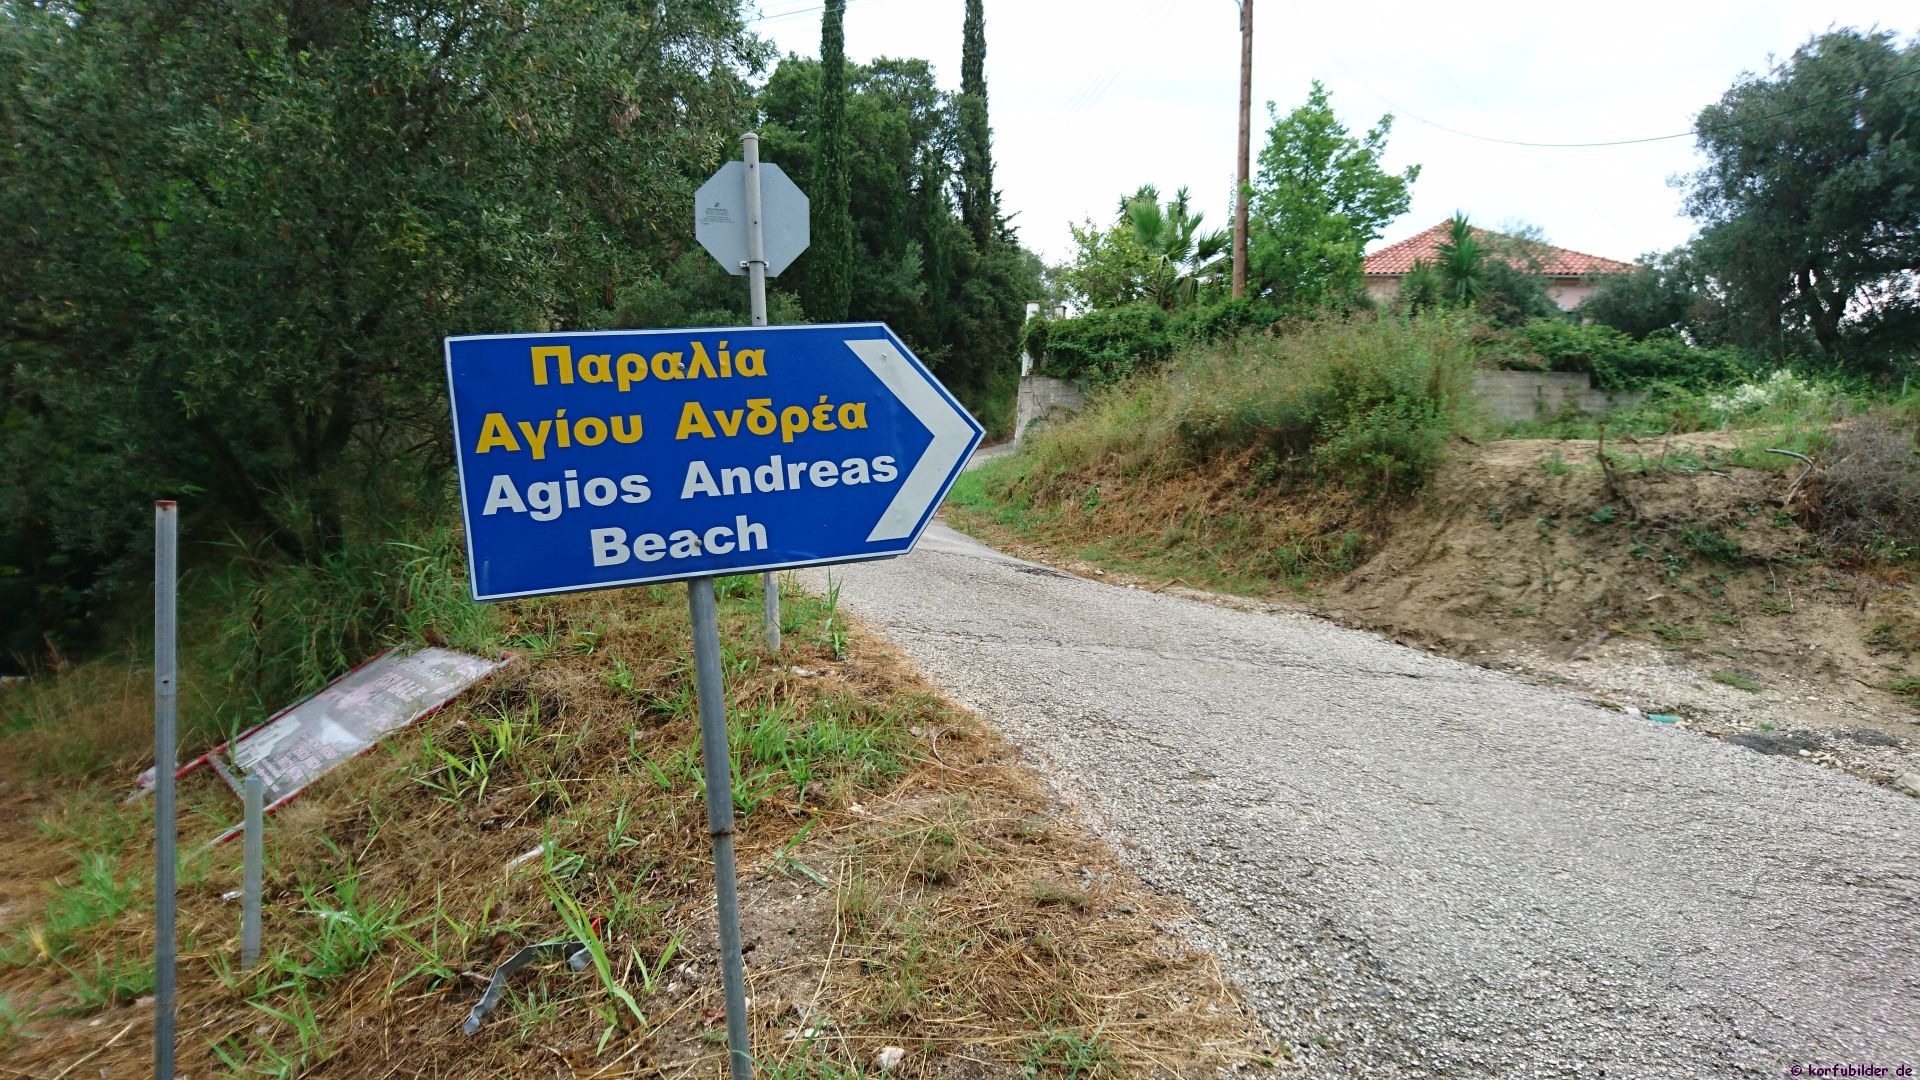 Agios Andreas – Astrakeri